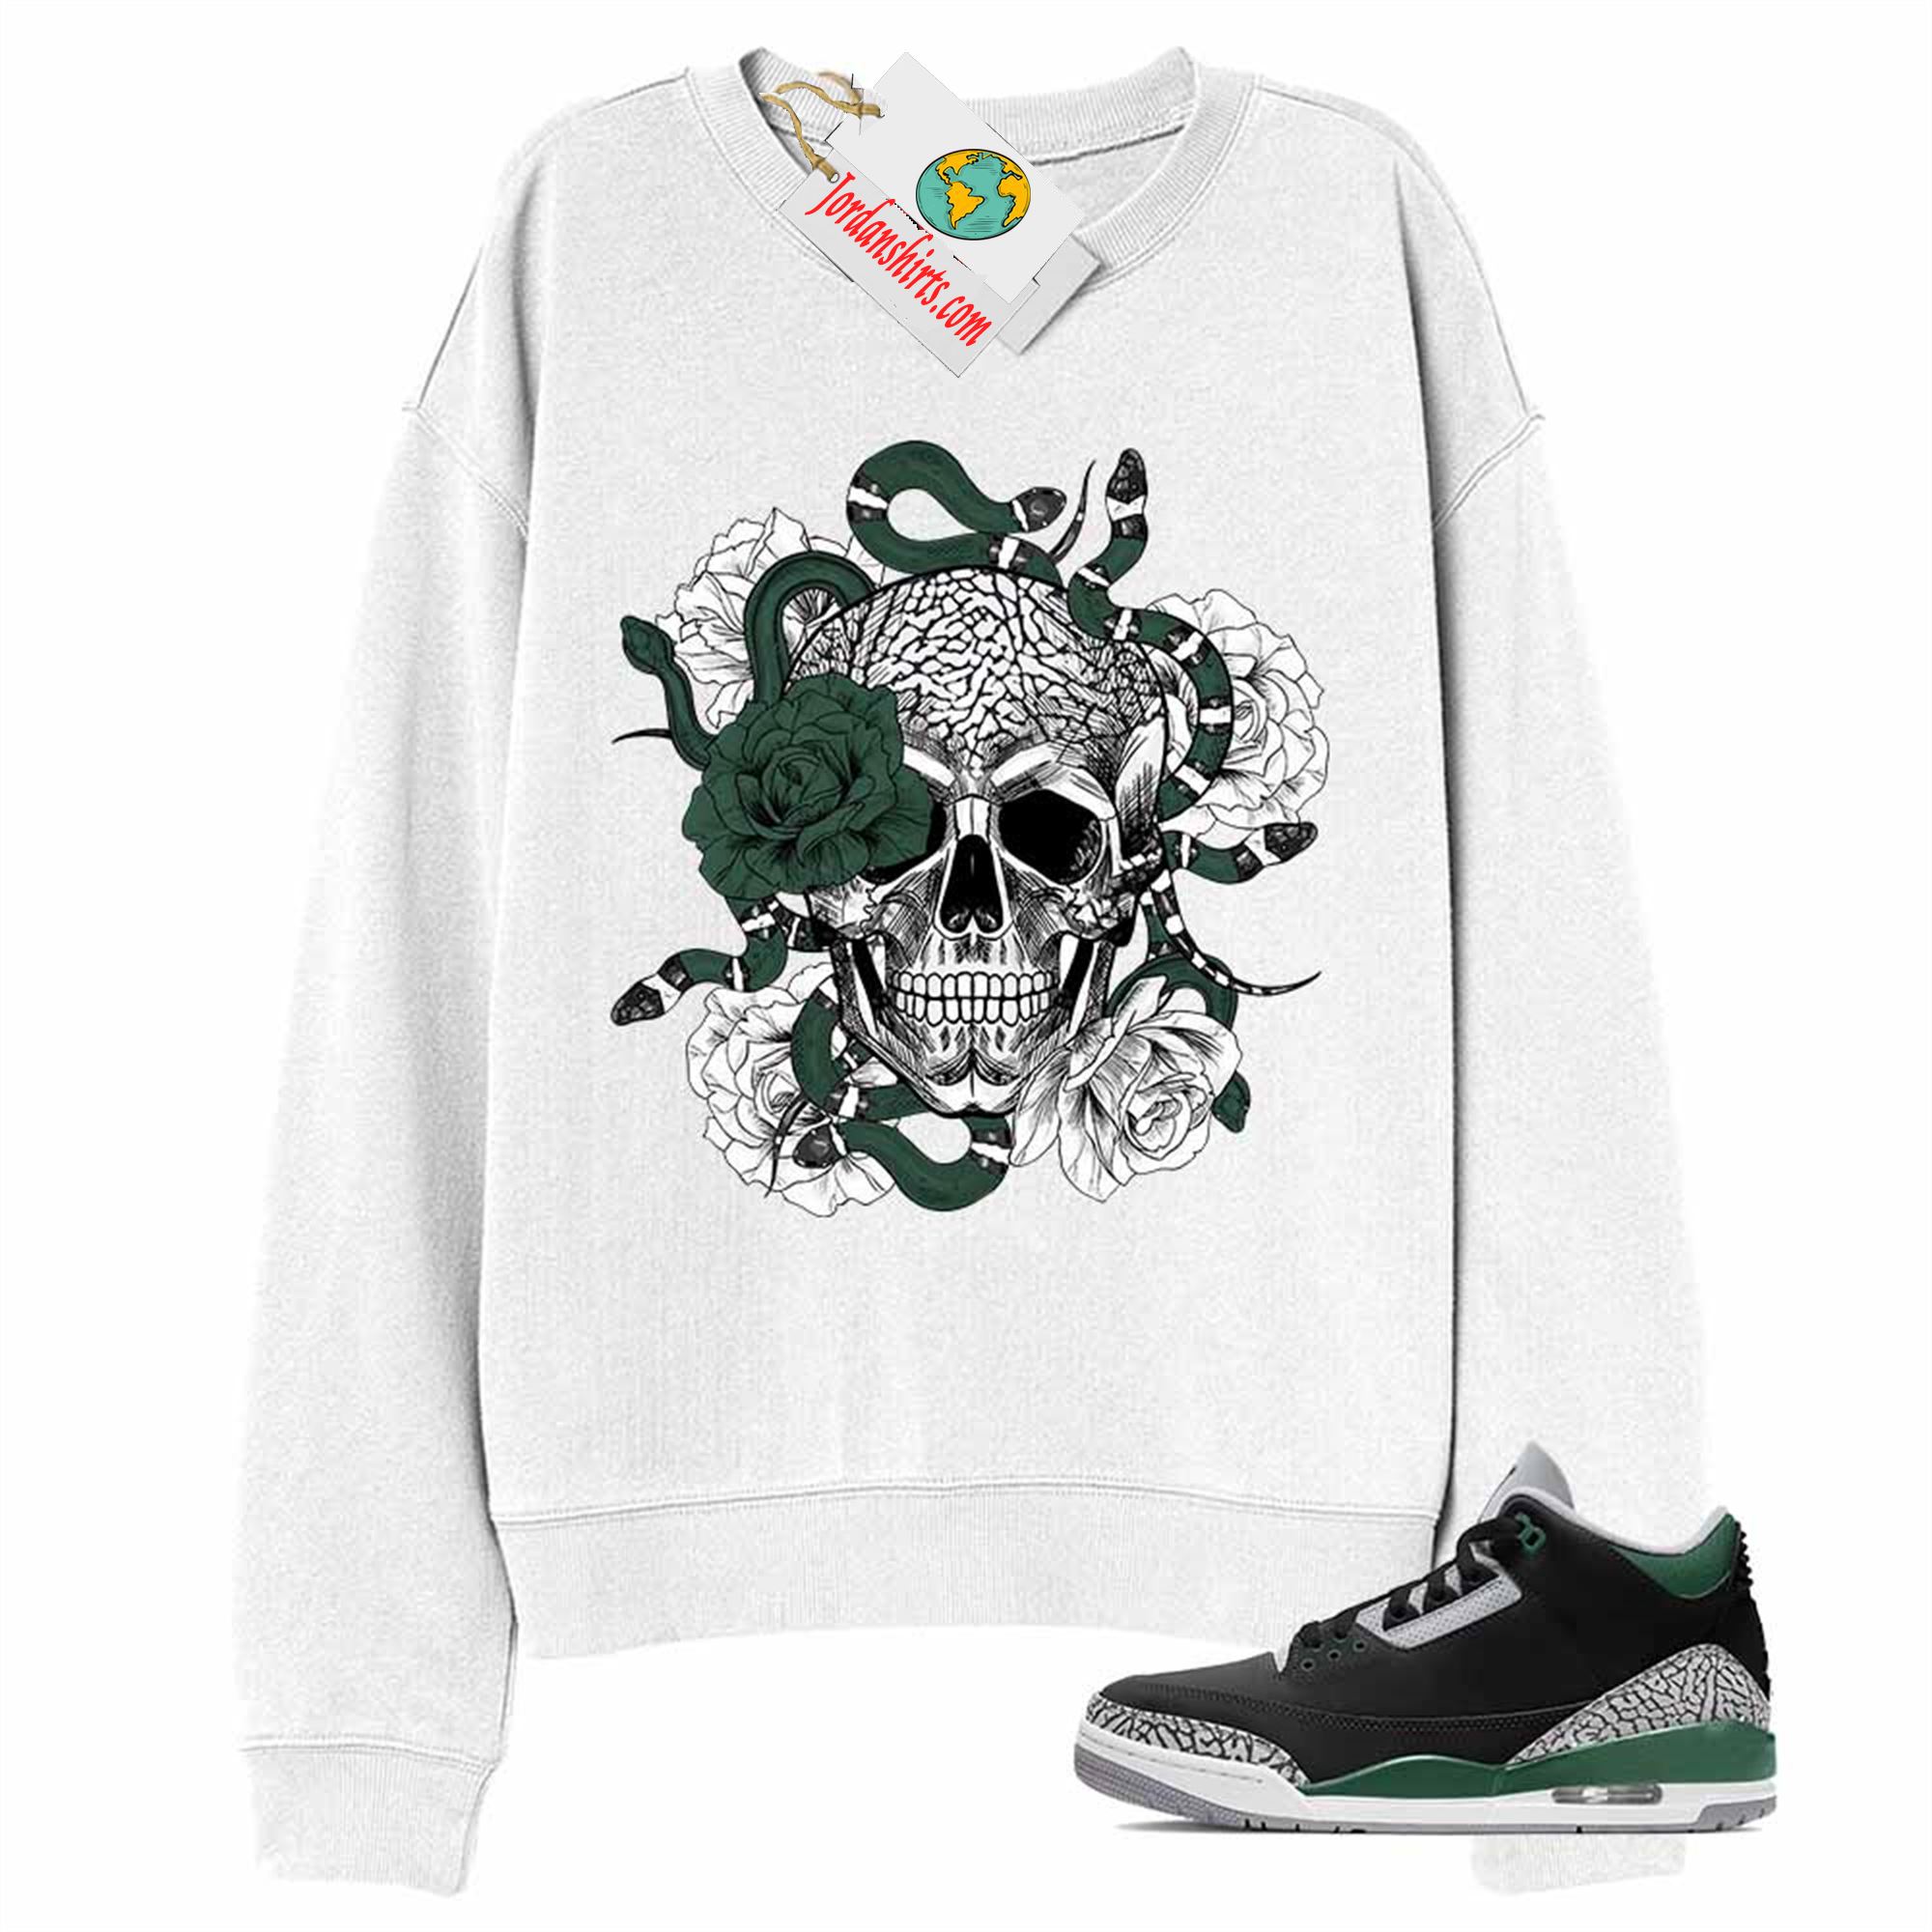 Jordan 3 Sweatshirt, Snake Skull Rose White Sweatshirt Air Jordan 3 Pine Green 3s Full Size Up To 5xl